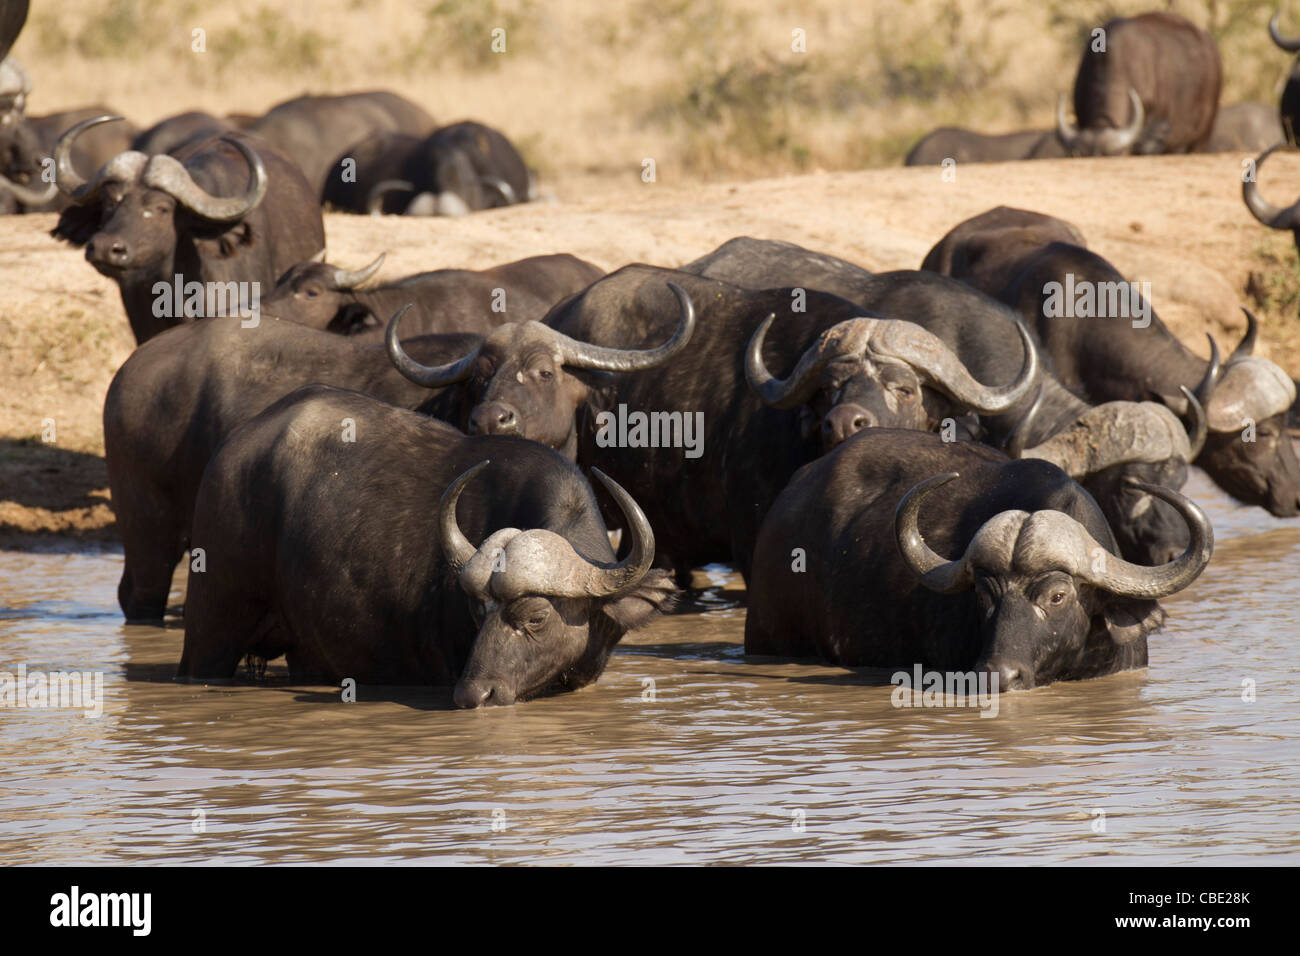 Cape Buffalo drinking water Stock Photo - Alamy